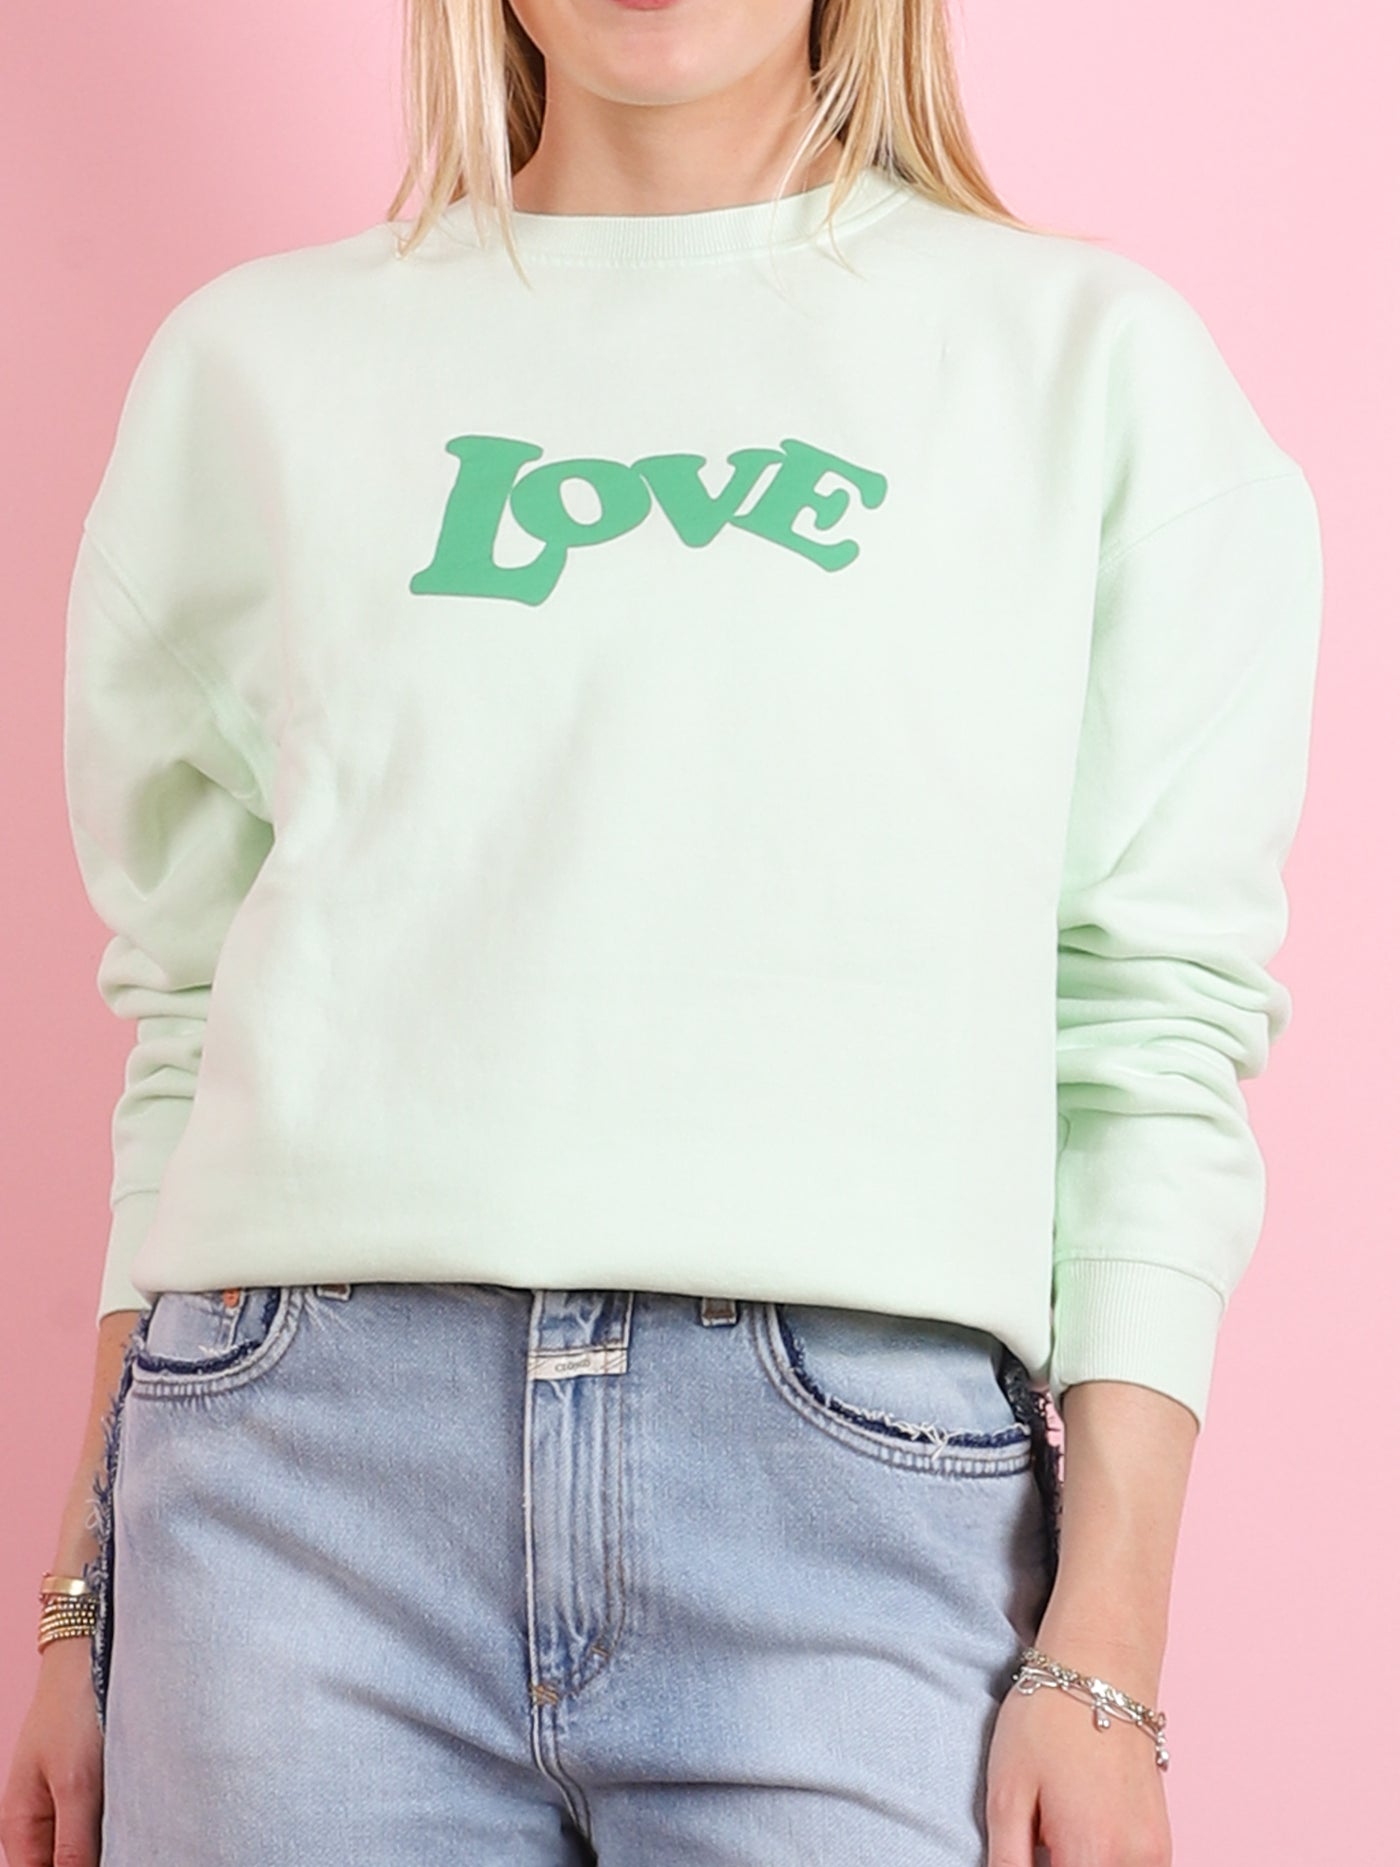 70s Love Sweatshirt